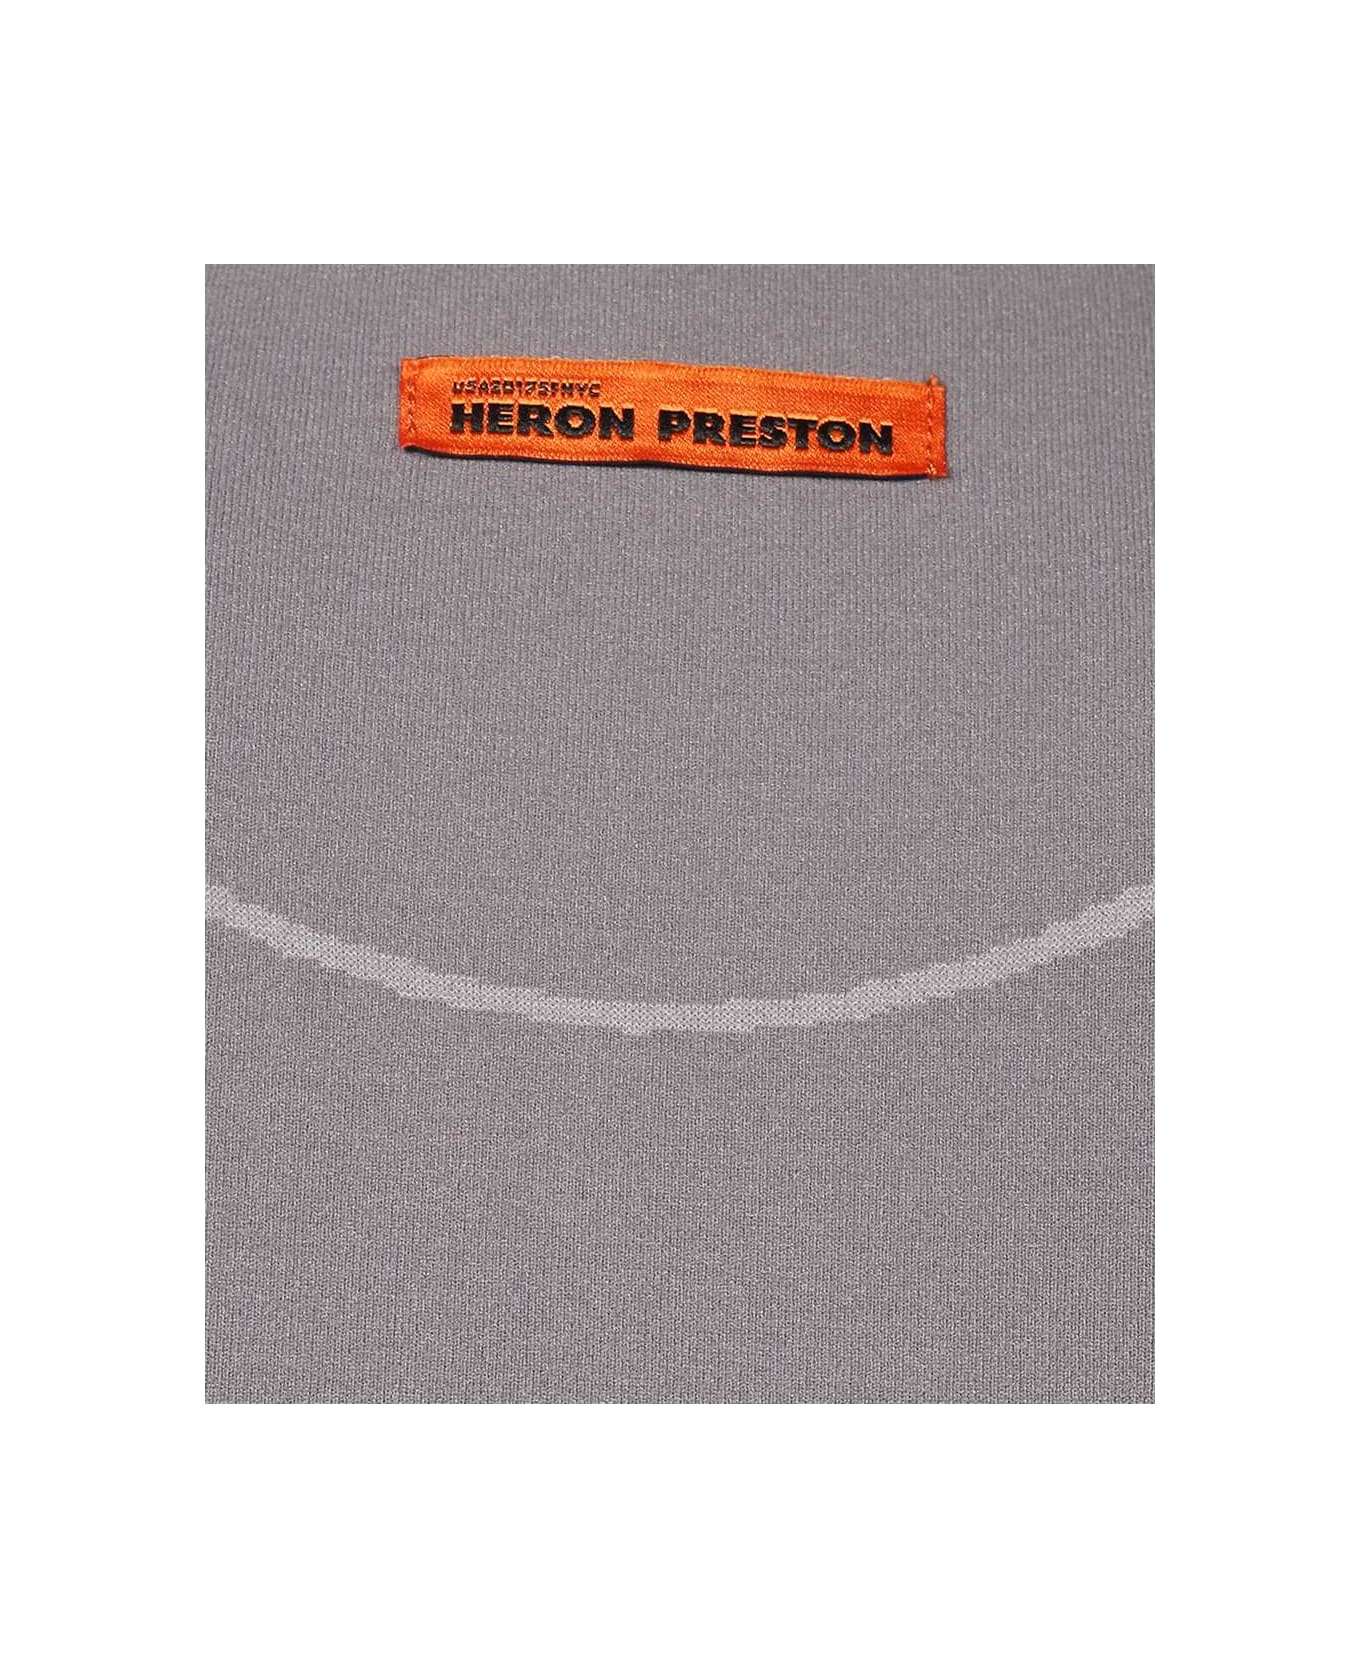 HERON PRESTON Technical Fabric Crop Top - grey